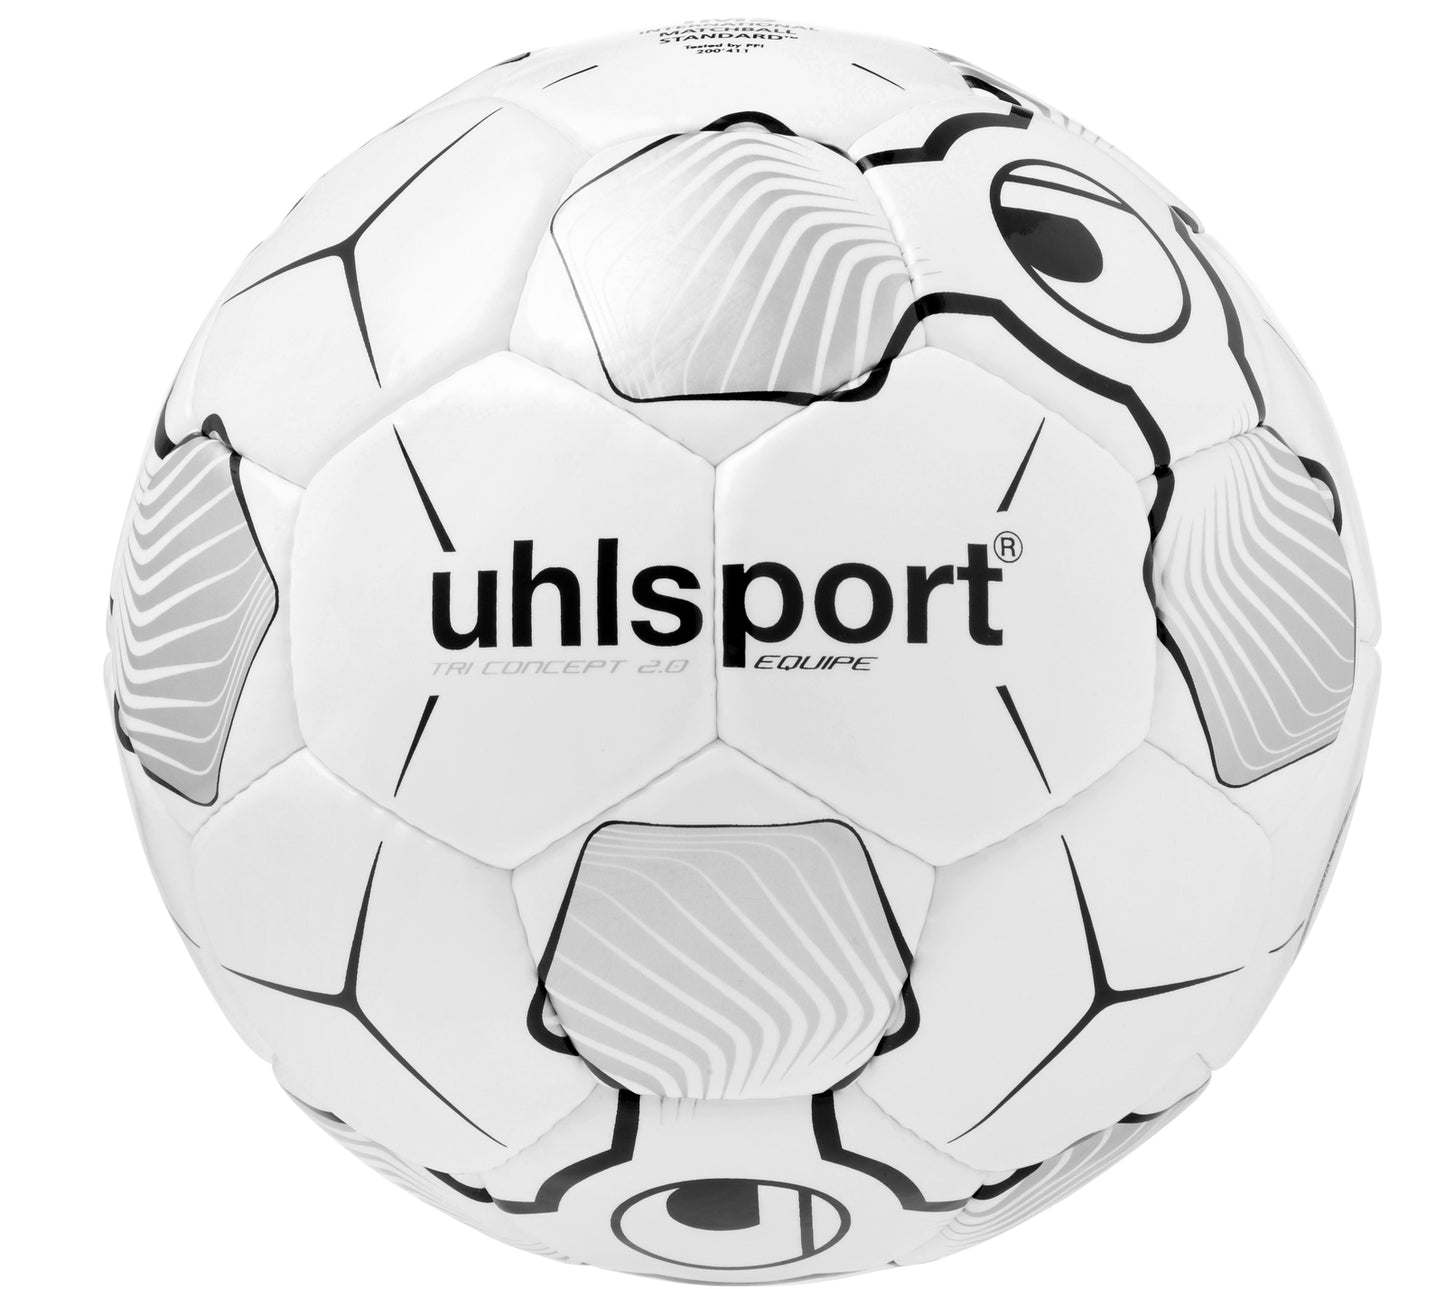 uhlsport Equipe Soccer Ball